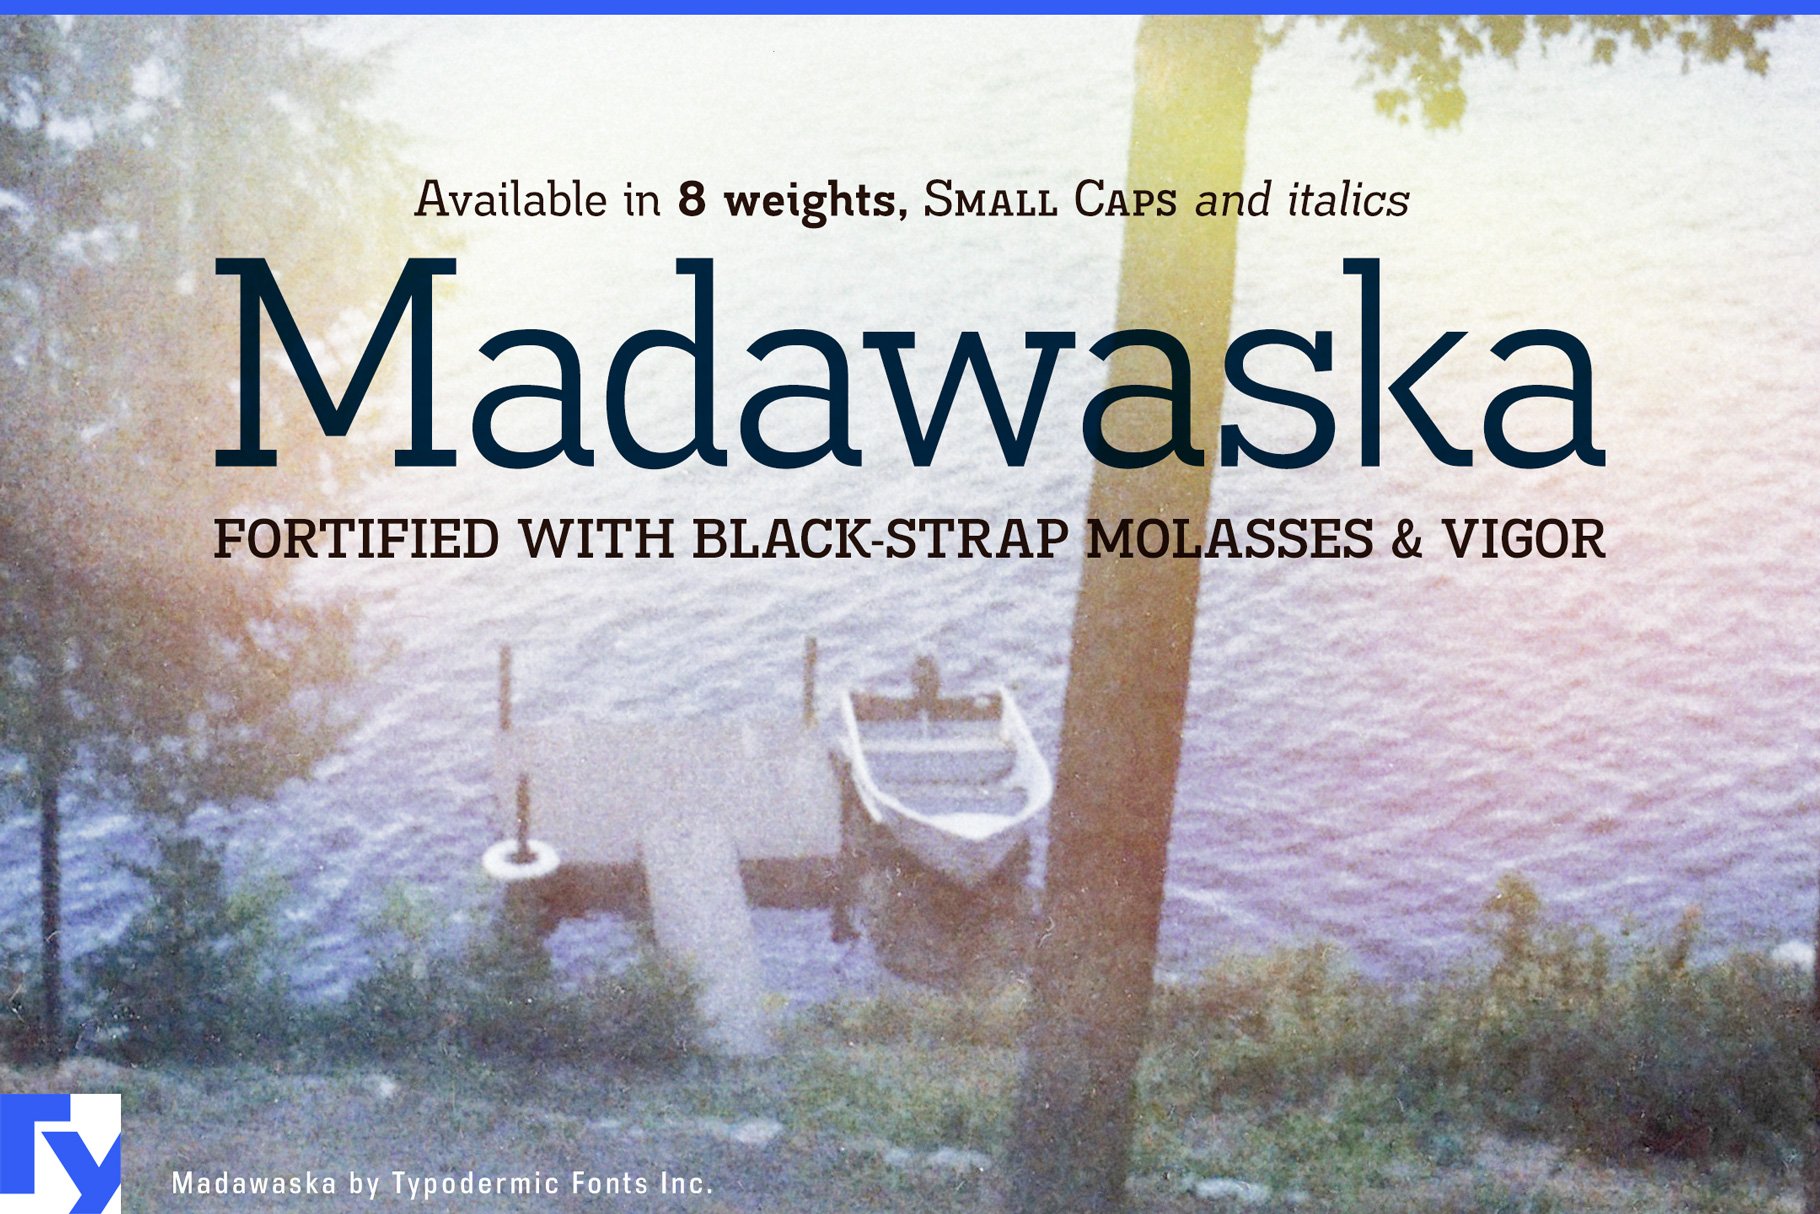 Madawaska cover image.